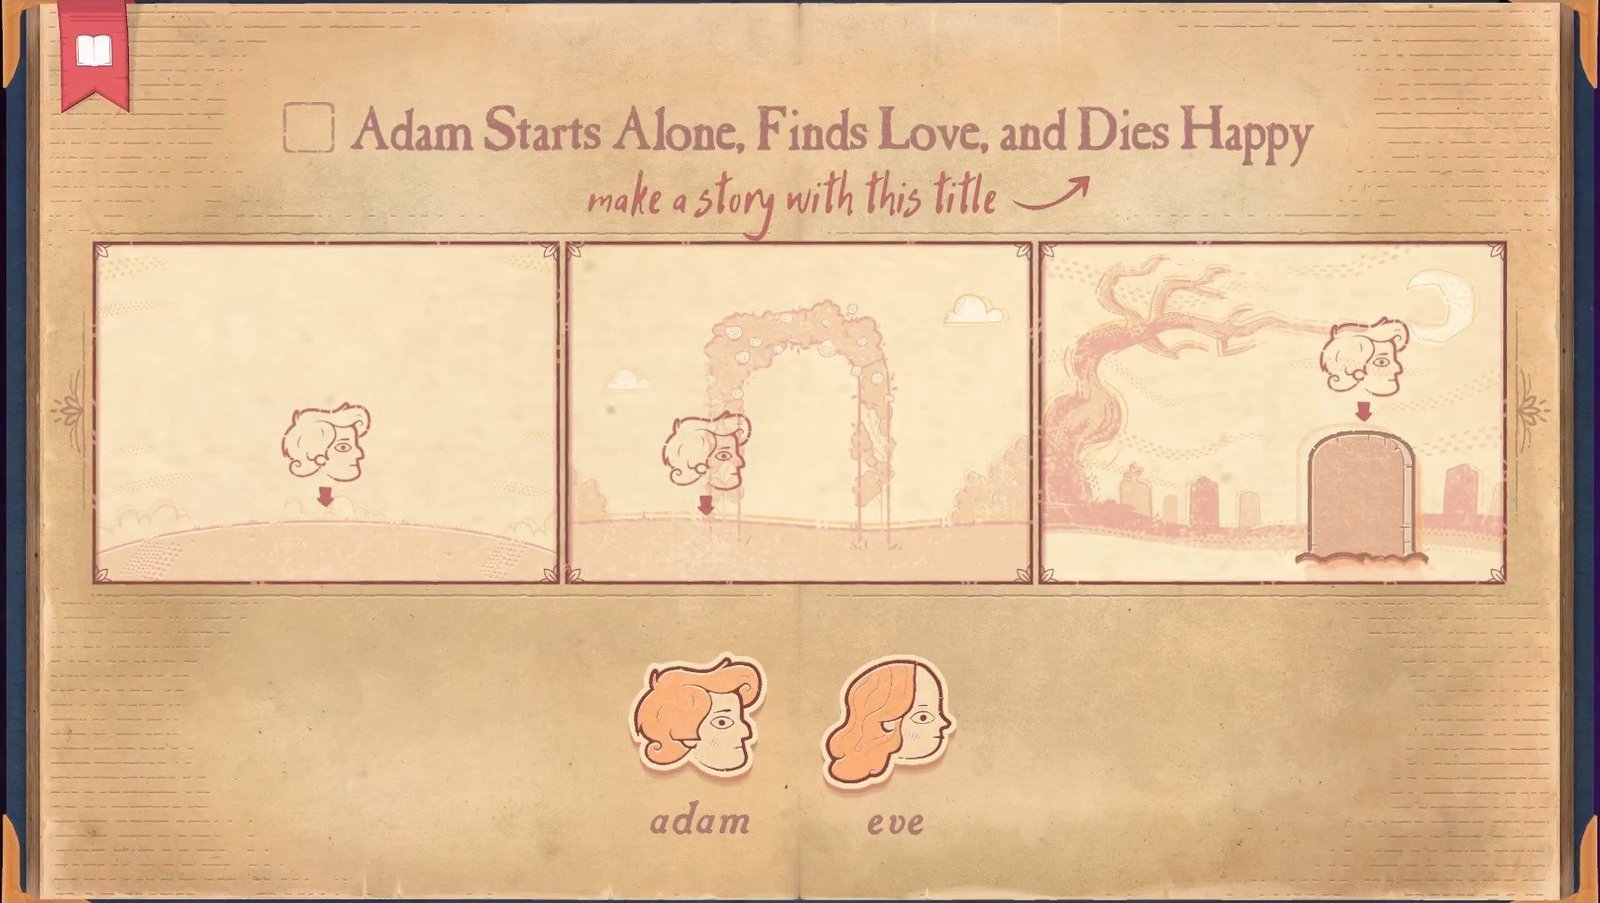 Storyteller: Adam Starts Alone, Finds Love, and Dies Happy